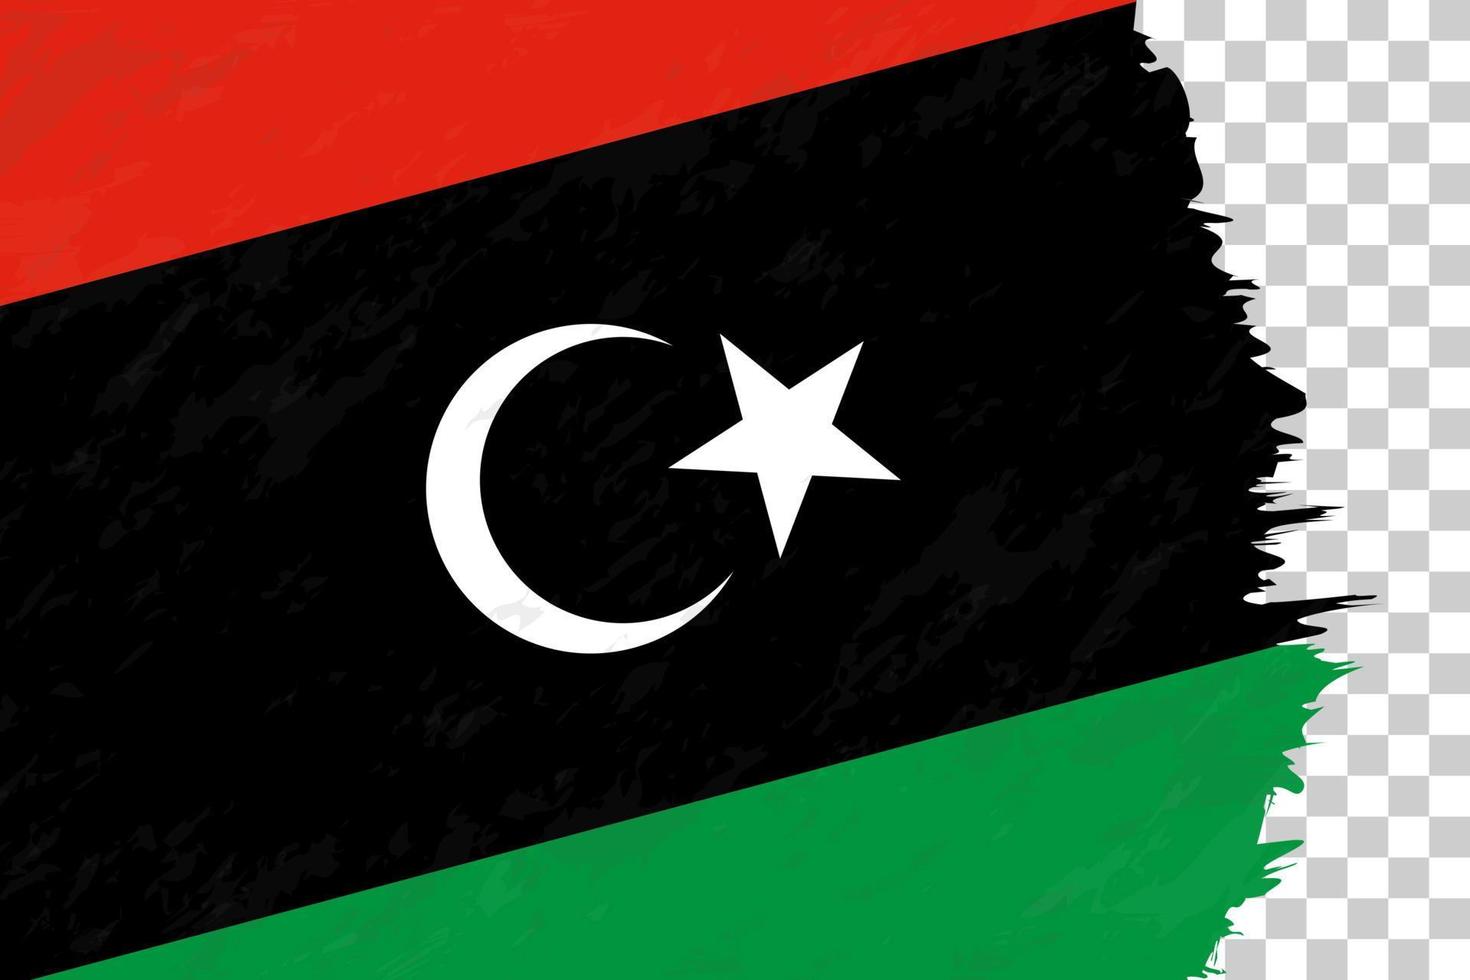 orizzontale astratto grunge spazzolato bandiera della Libia sulla griglia trasparente. vettore